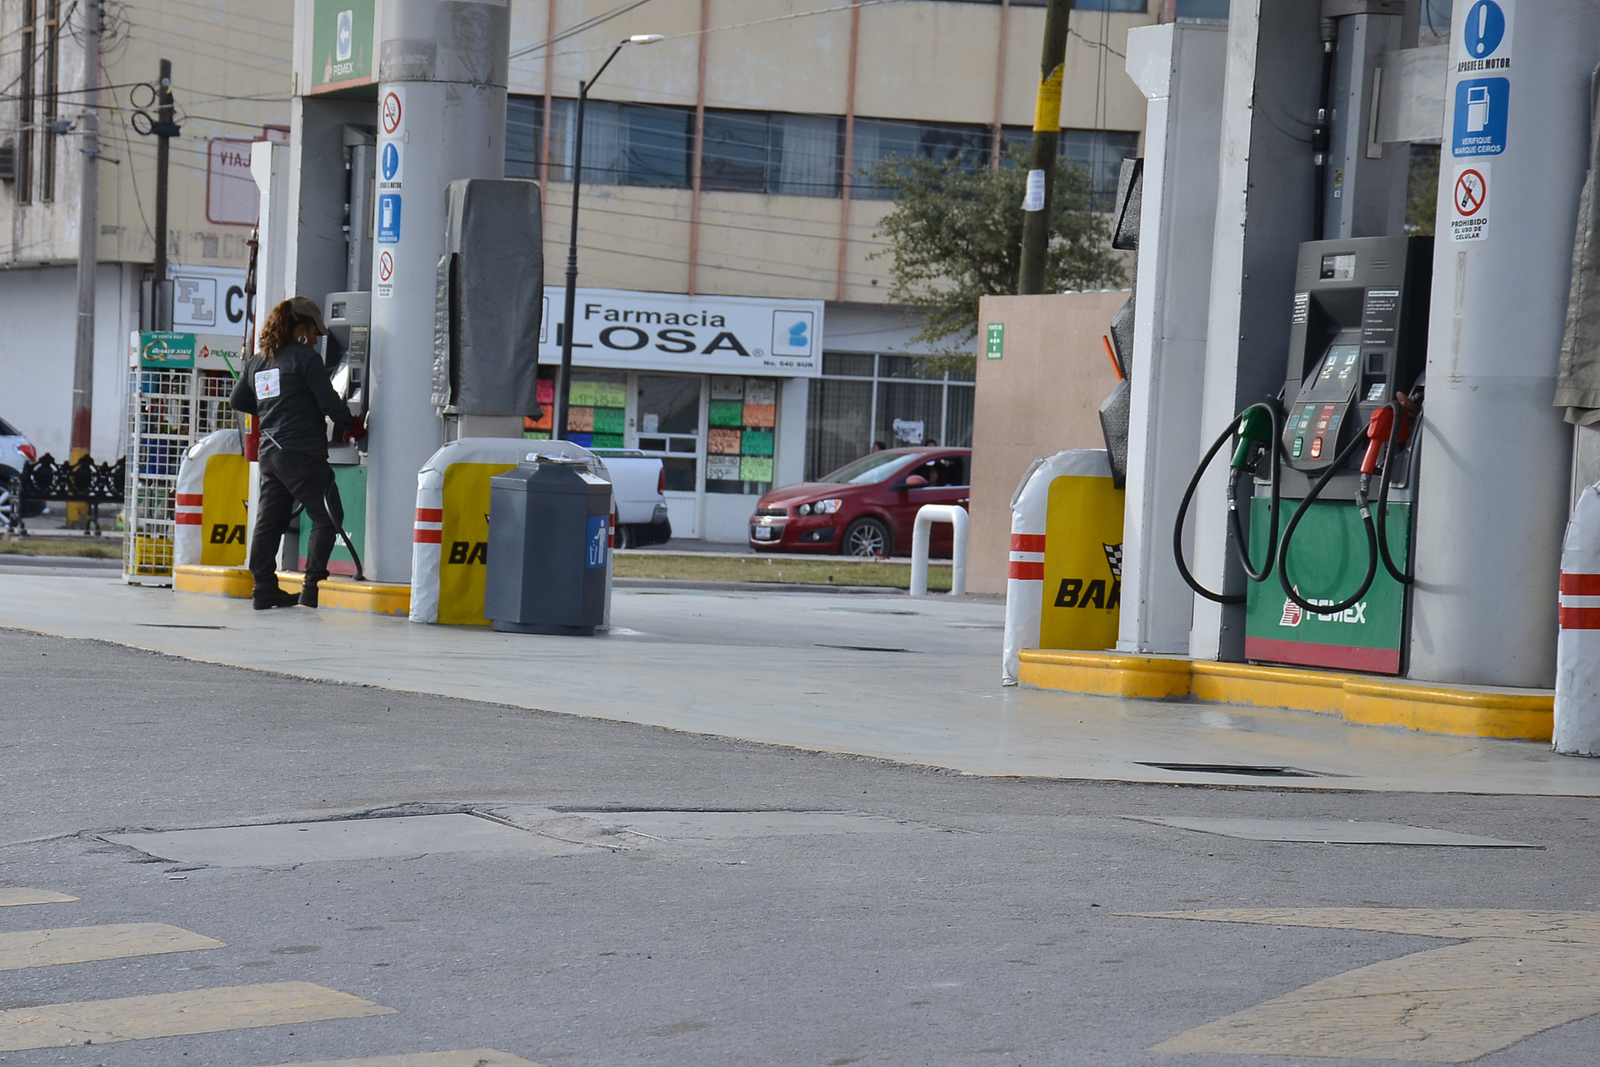 Dato. En Coahuila hay 430 gasolineras y en Saltillo y la región sureste son 148. El problema se presenta en Saltillo, Ramos Arizpe, Arteaga y Parras y sólo en el 20% de ellas (30 en promedio), cerraron porque se les acabó el combustible.